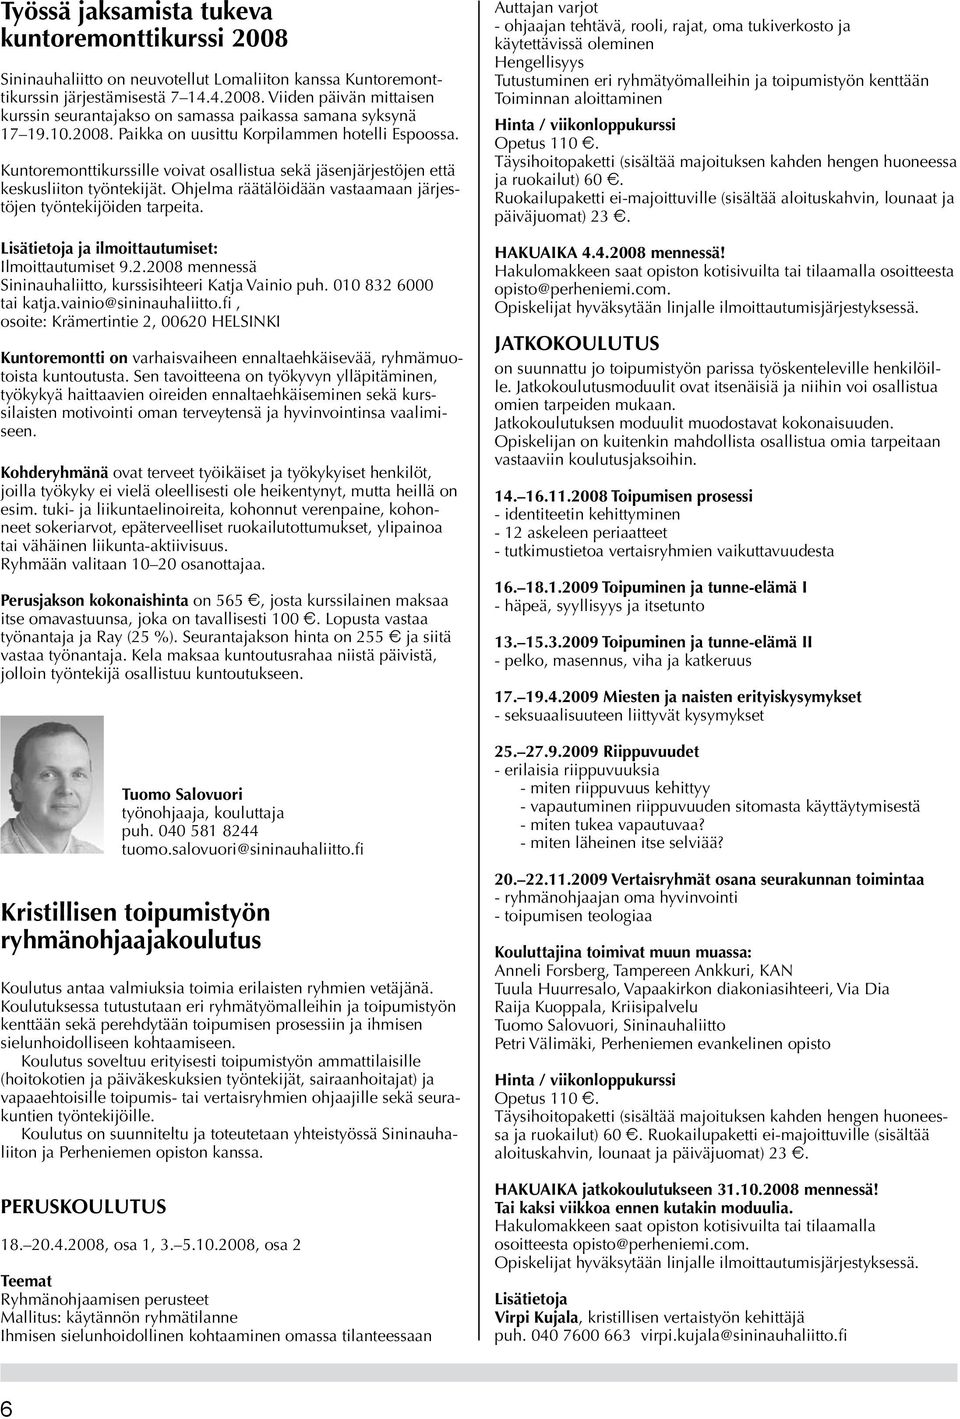 Ohjelma räätälöidään vastaamaan järjestöjen työntekijöiden tarpeita. Lisätietoja ja ilmoittautumiset: Ilmoittautumiset 9.2.2008 mennessä Sininauhaliitto, kurssisihteeri Katja Vainio puh.